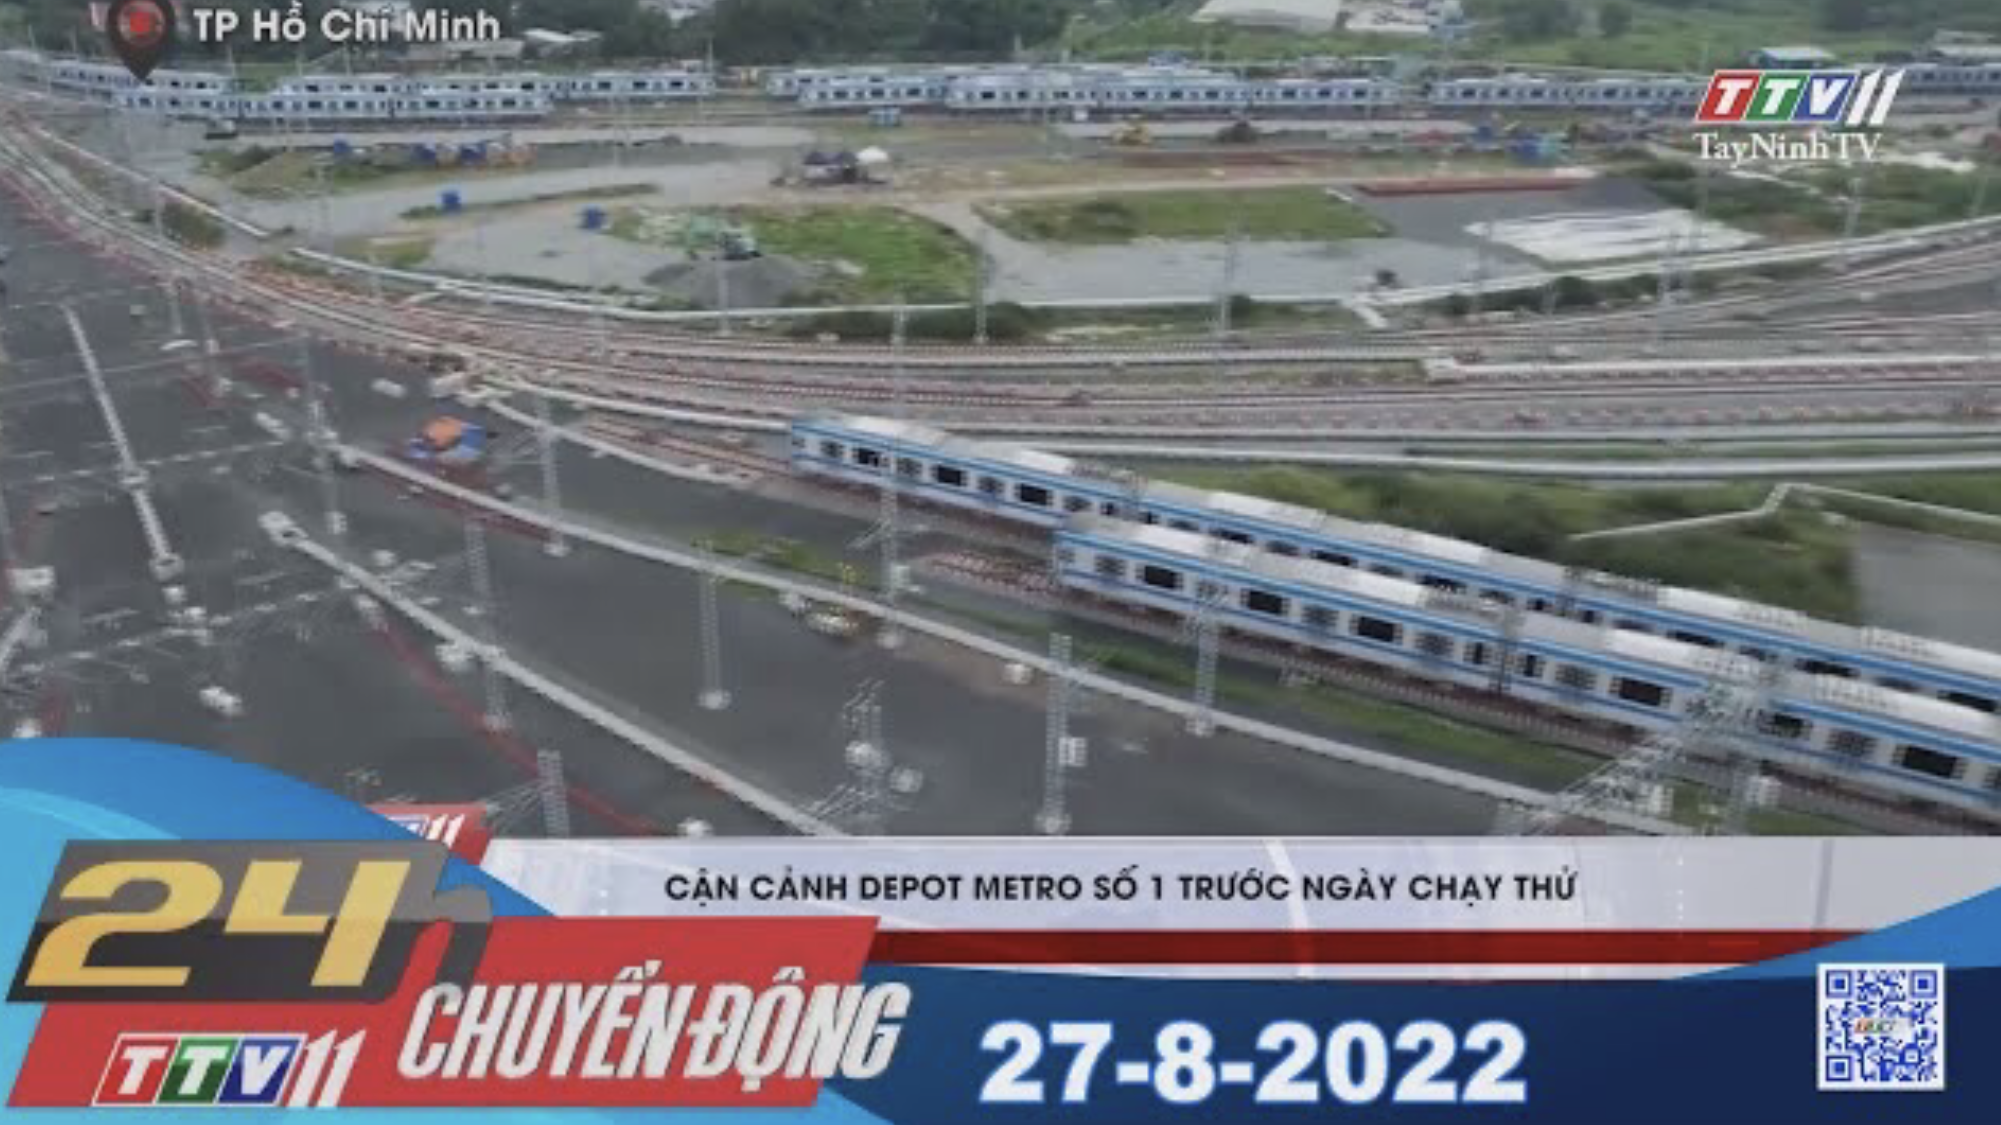 24h Chuyển động 27-8-2022 | Tin tức hôm nay | TayNinhTV